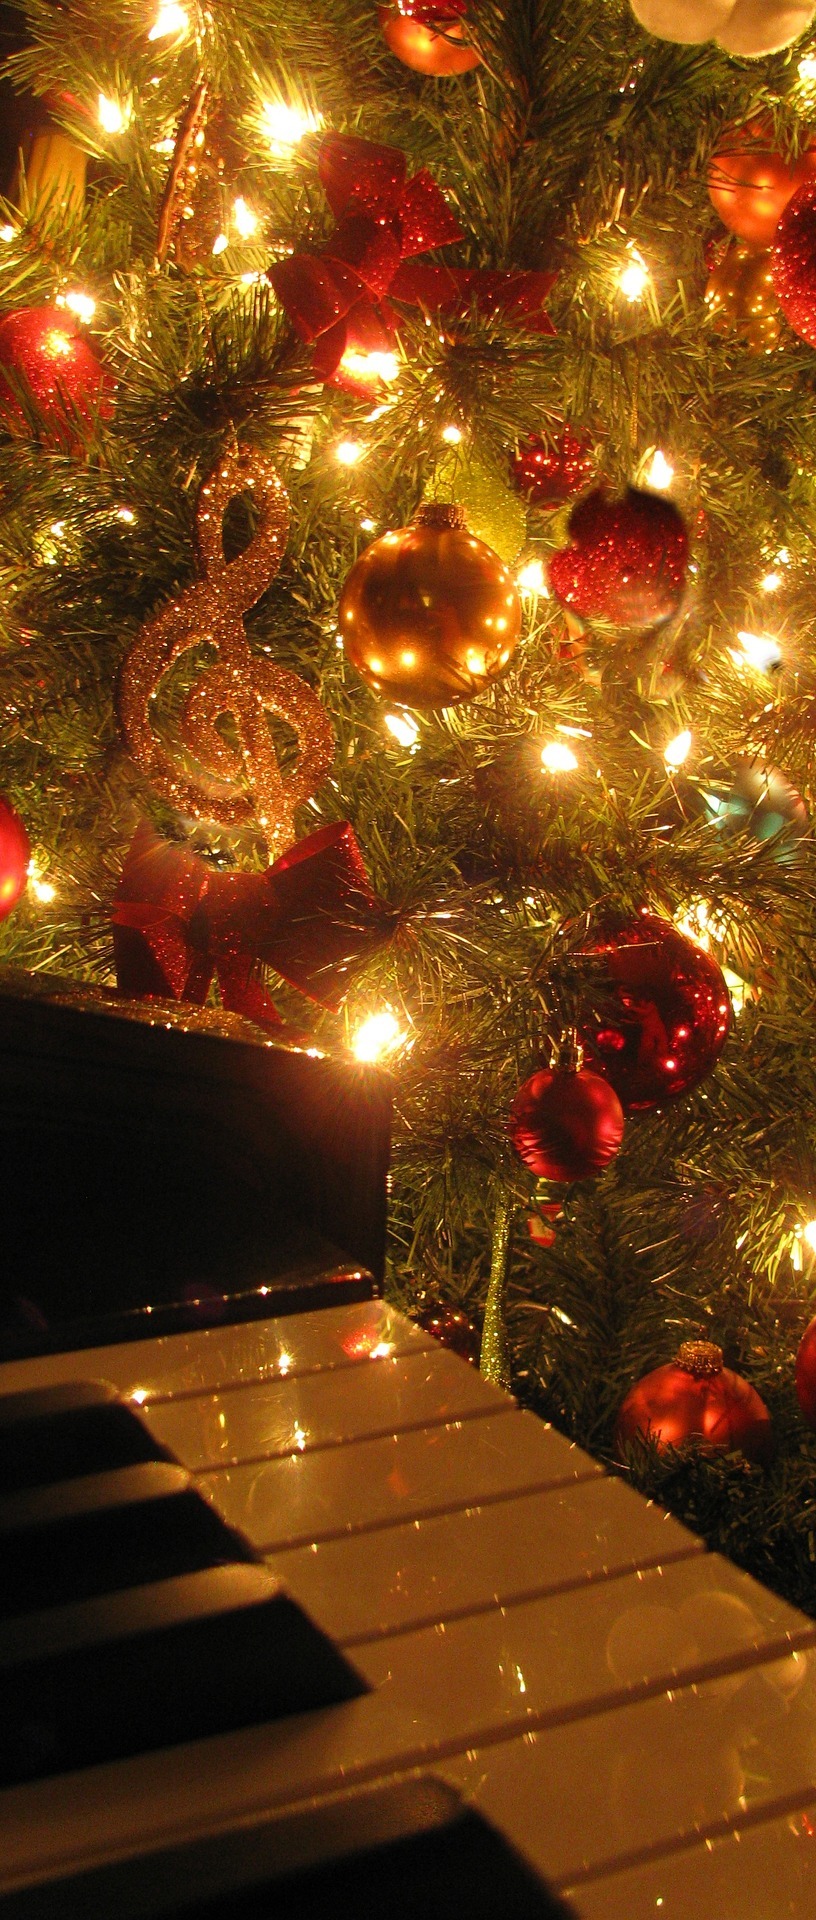 Weihnachtsbaum neben dem Klavier